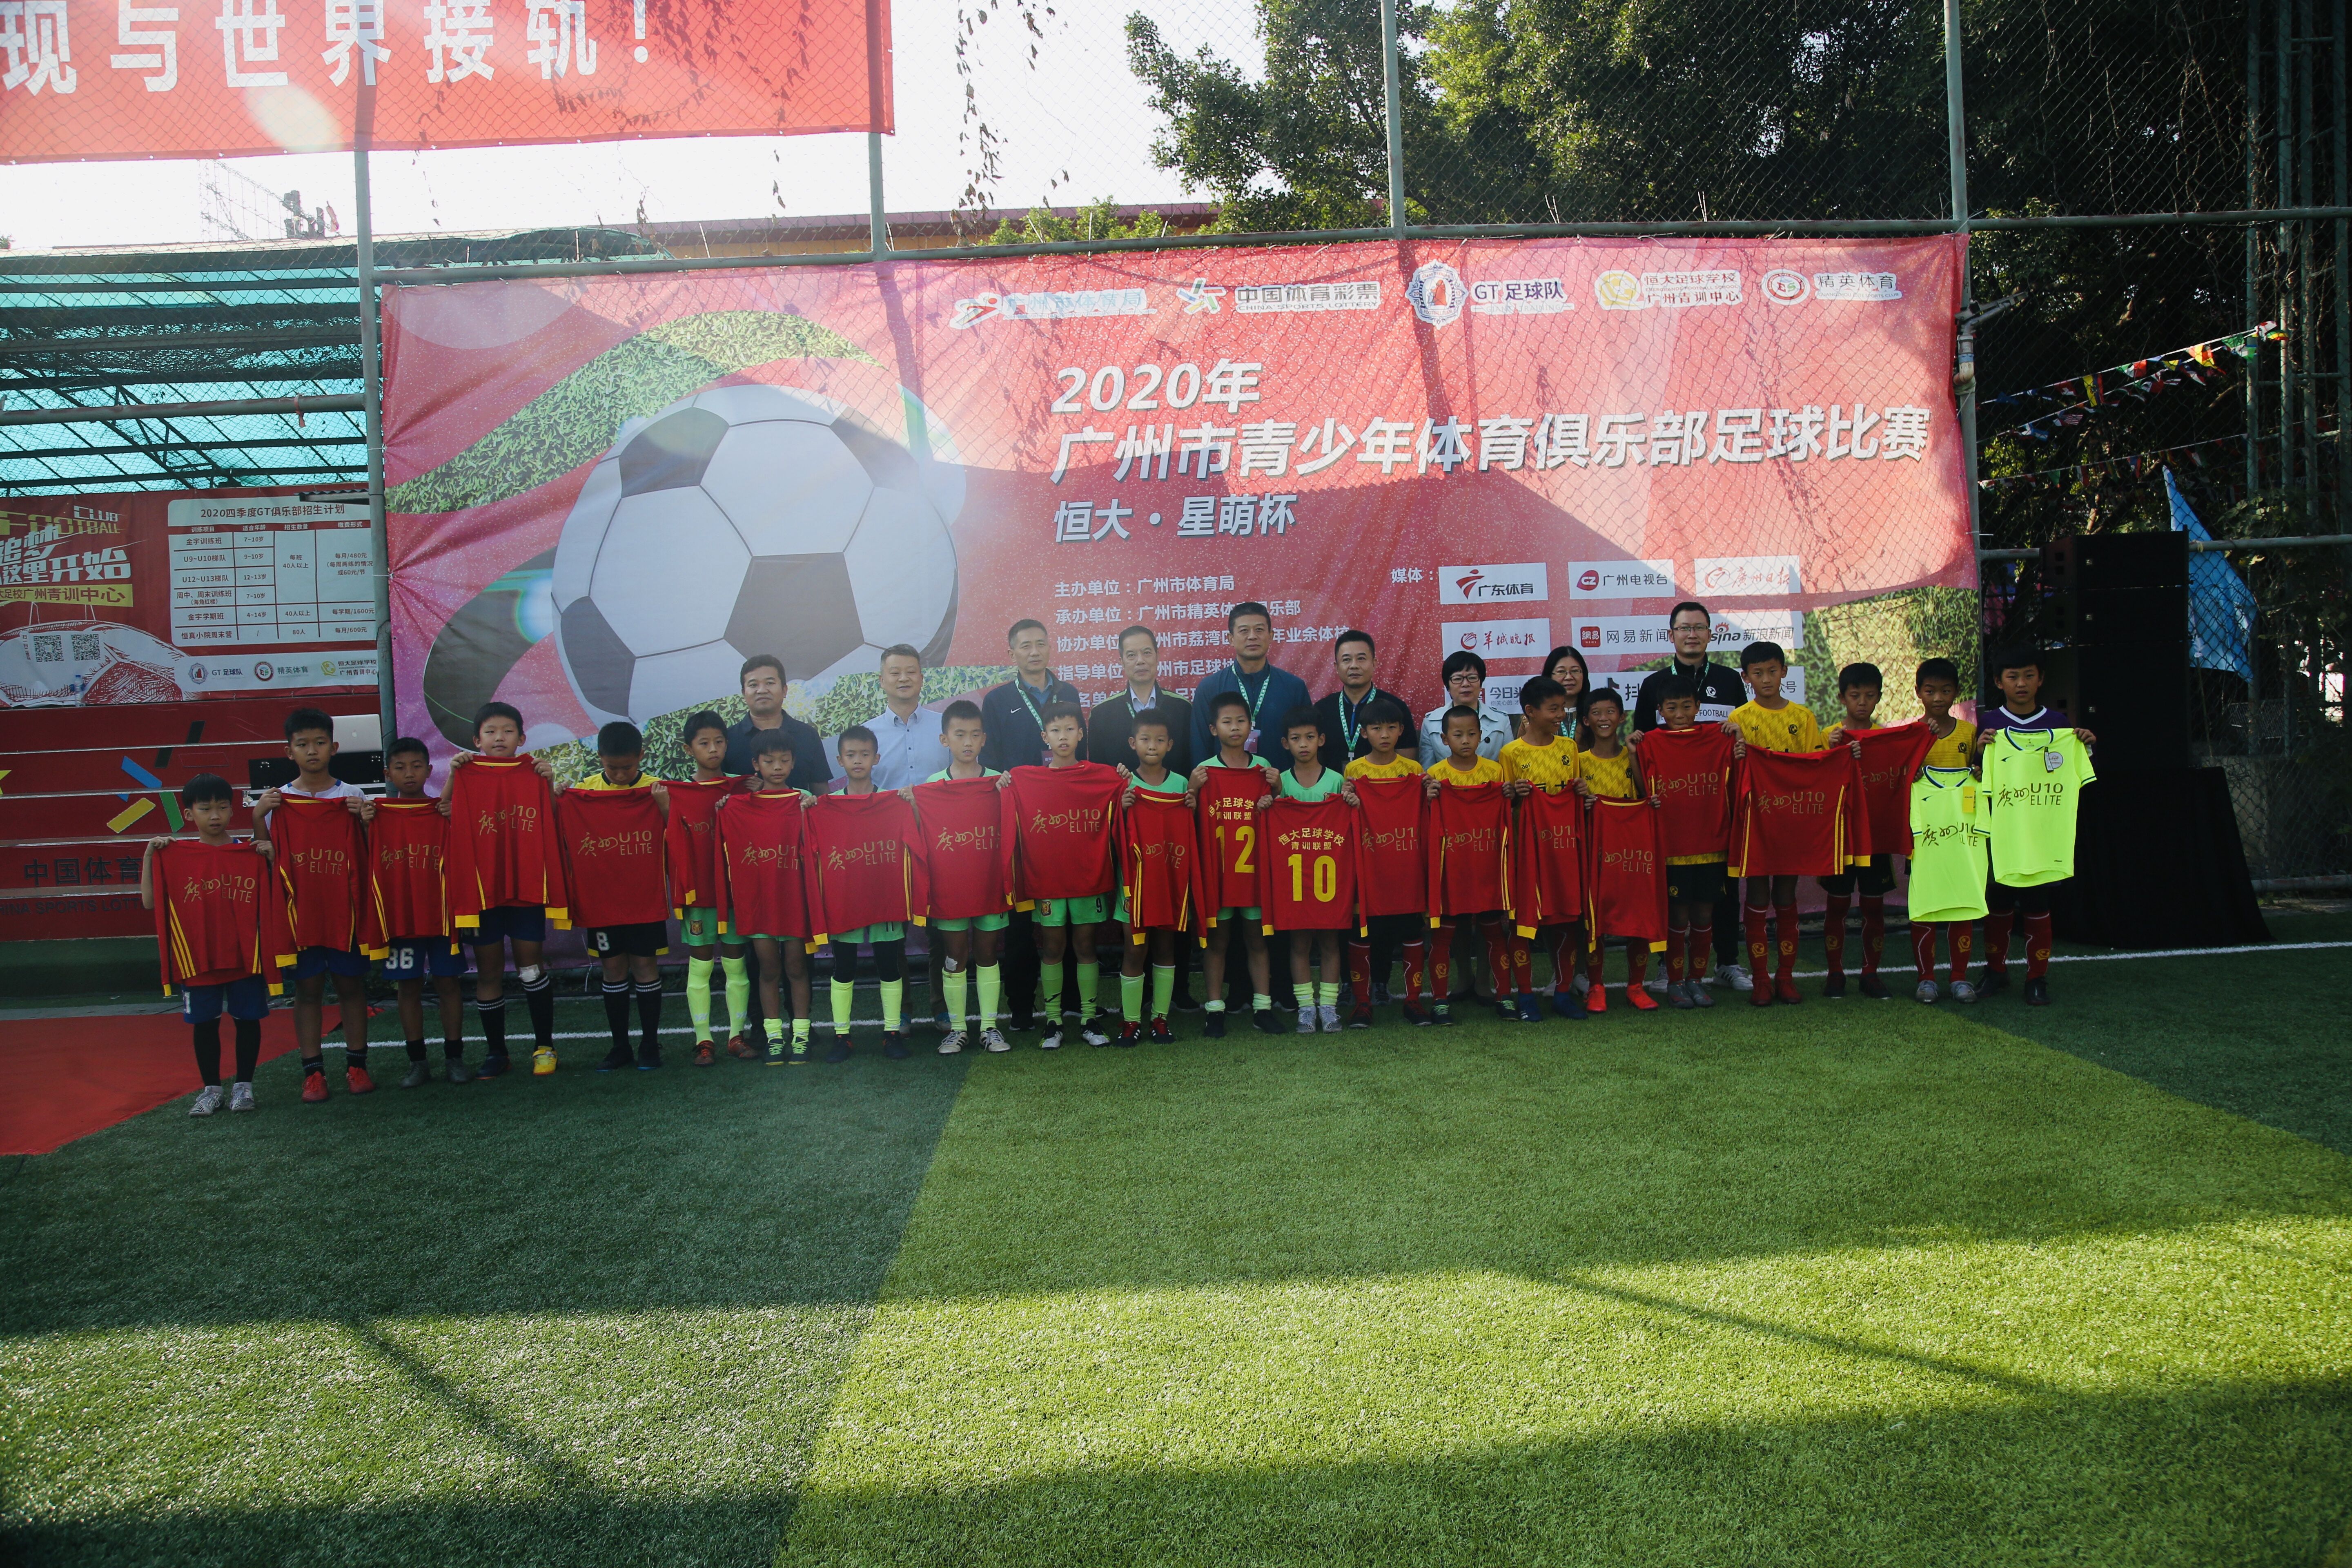 广州青少年体育俱乐部比赛开幕 共3年龄组别24支球队_俱乐部足球